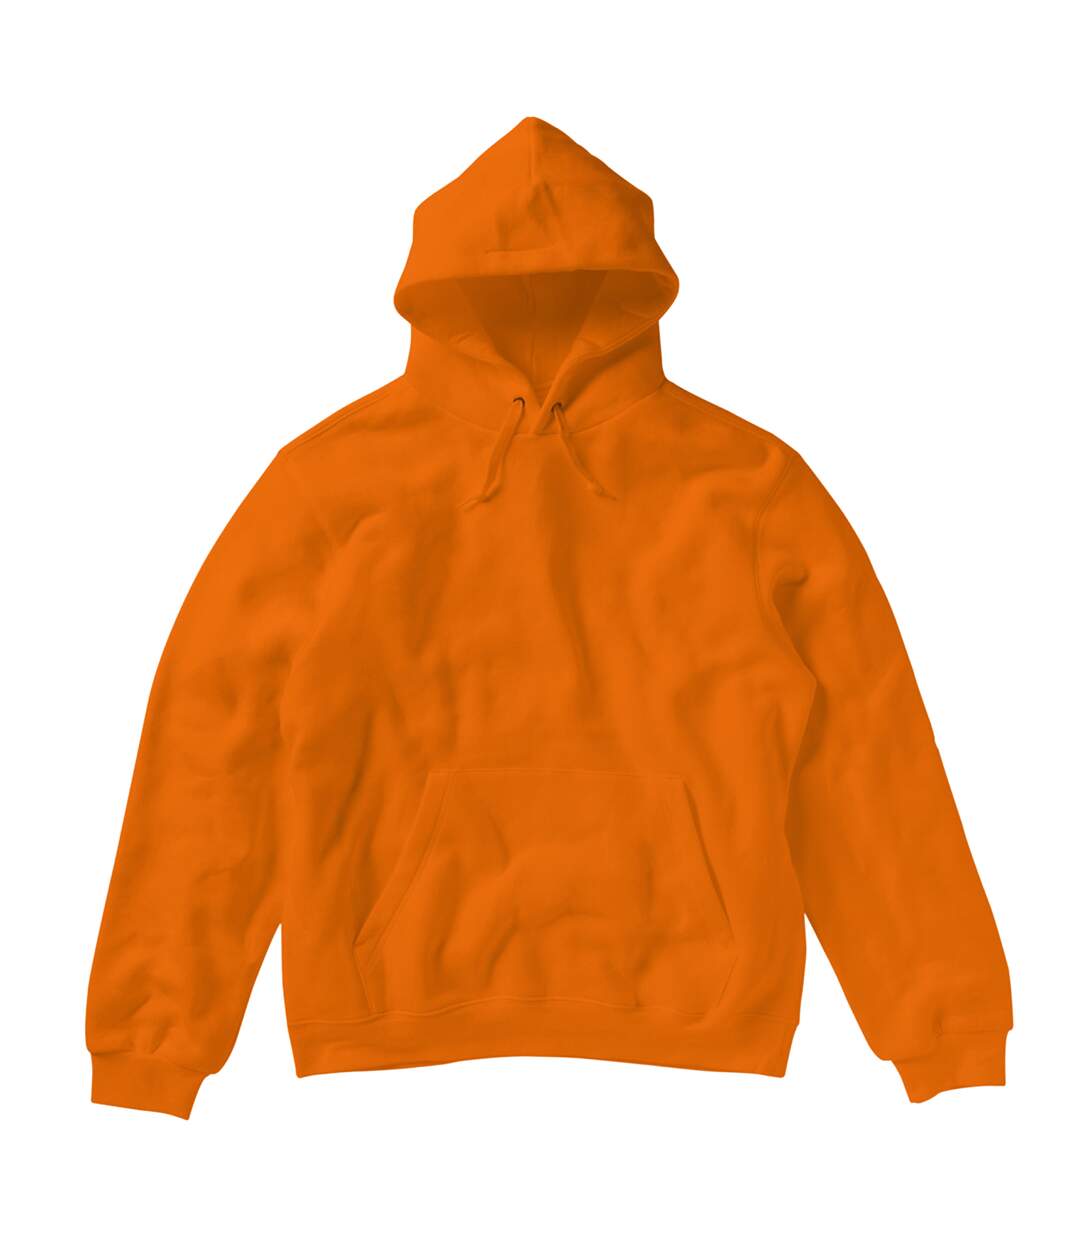 SG Ladies/Womens Plain Hooded Sweatshirt Top / Hoodie (Orange)